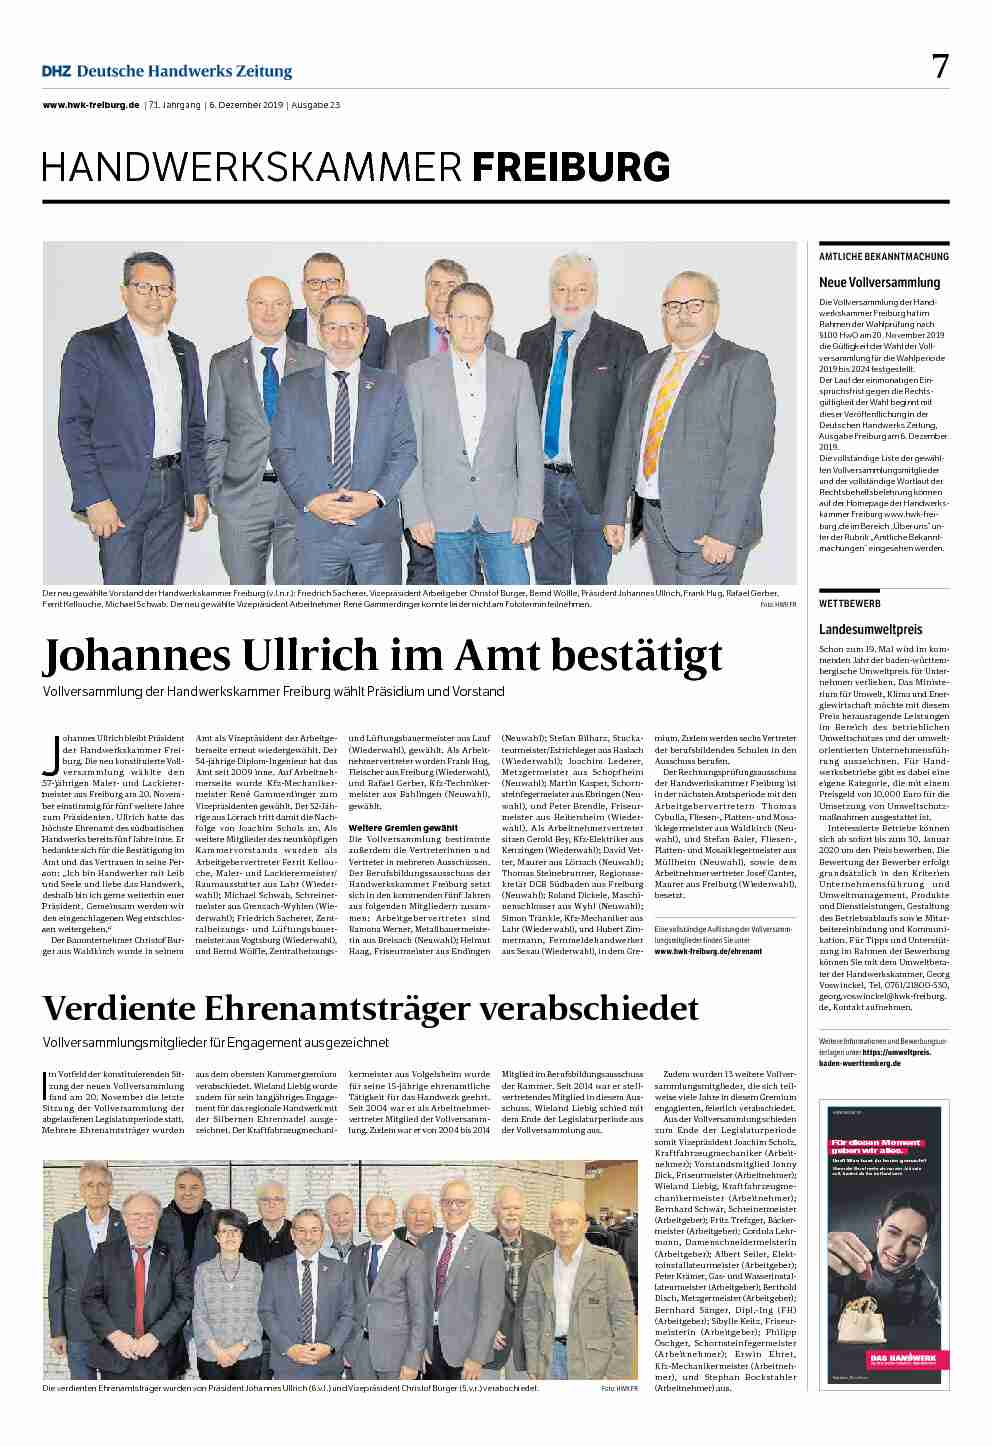 [PDF] Johannes Ullrich im Amt bestätigt - Handwerkskammer Freiburg